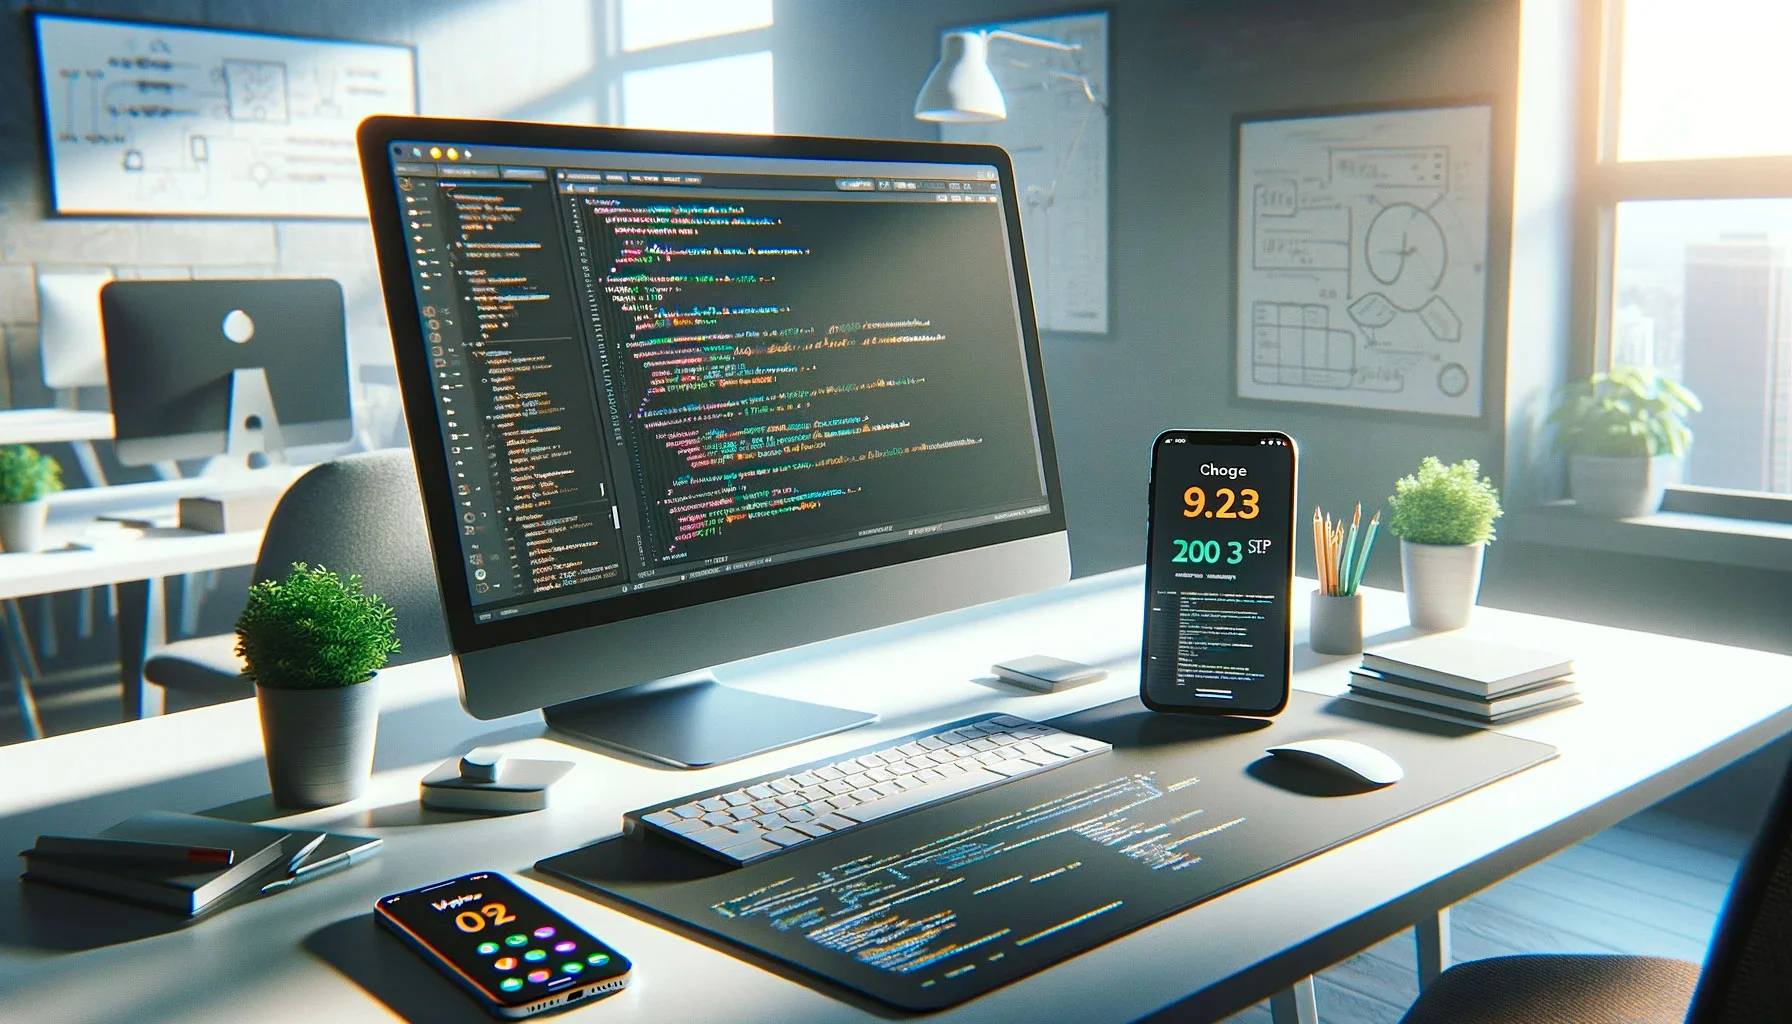 Fotografía realista de un escritorio de trabajo tecnológico con un ordenador mostrando código de desarrollo web y un smartphone con interfaz de aplicación móvil, reflejando la elección entre desarrollo web y de apps.